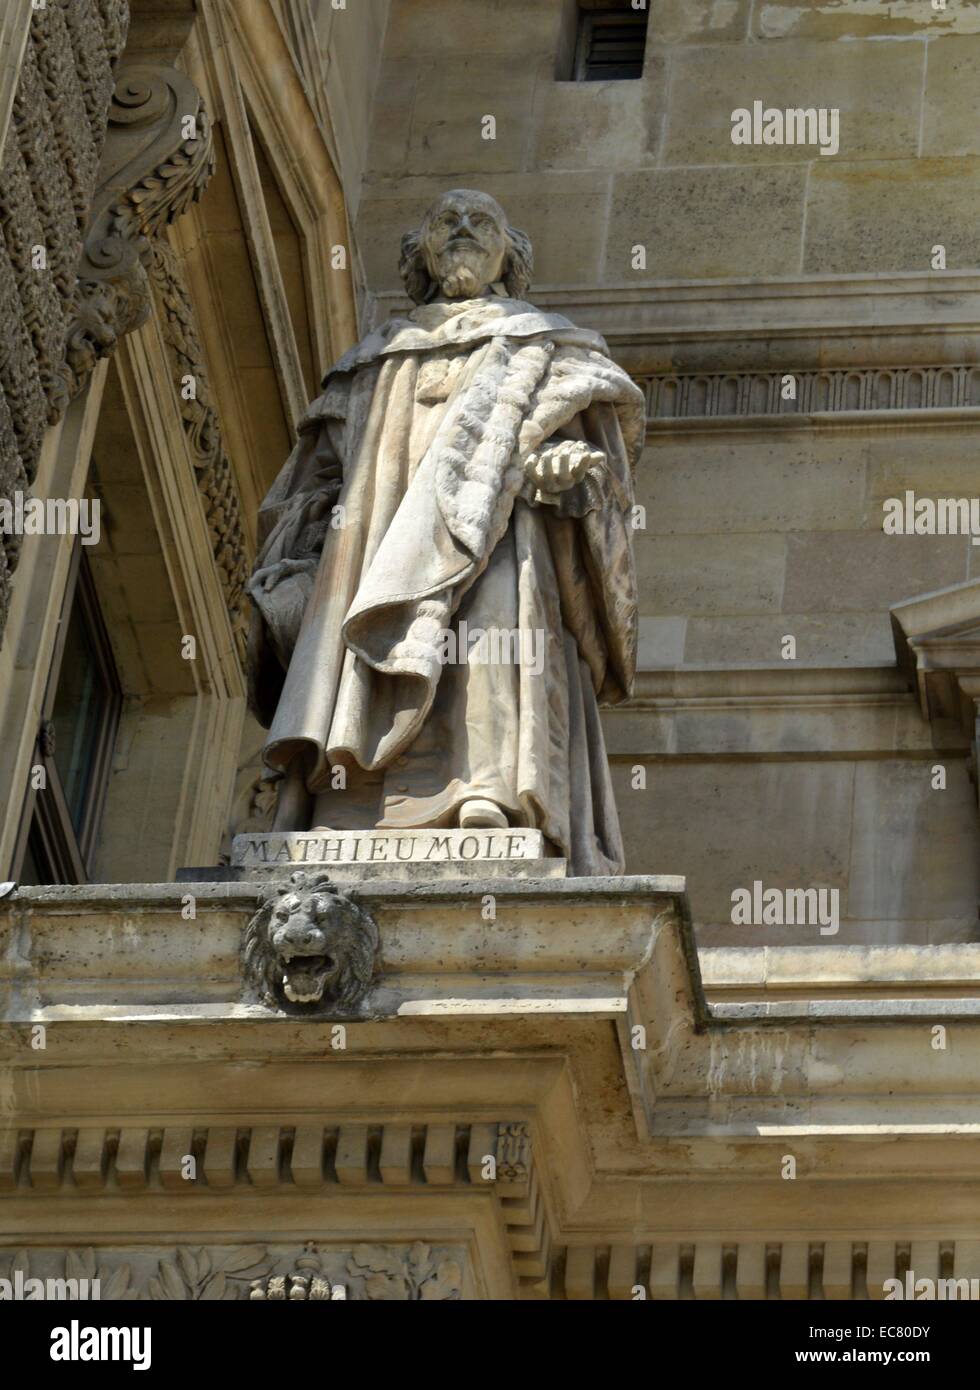 Statue en marbre de Mathieu Mole (1689-1755) était un homme d'État français. En date du 17e siècle. Banque D'Images